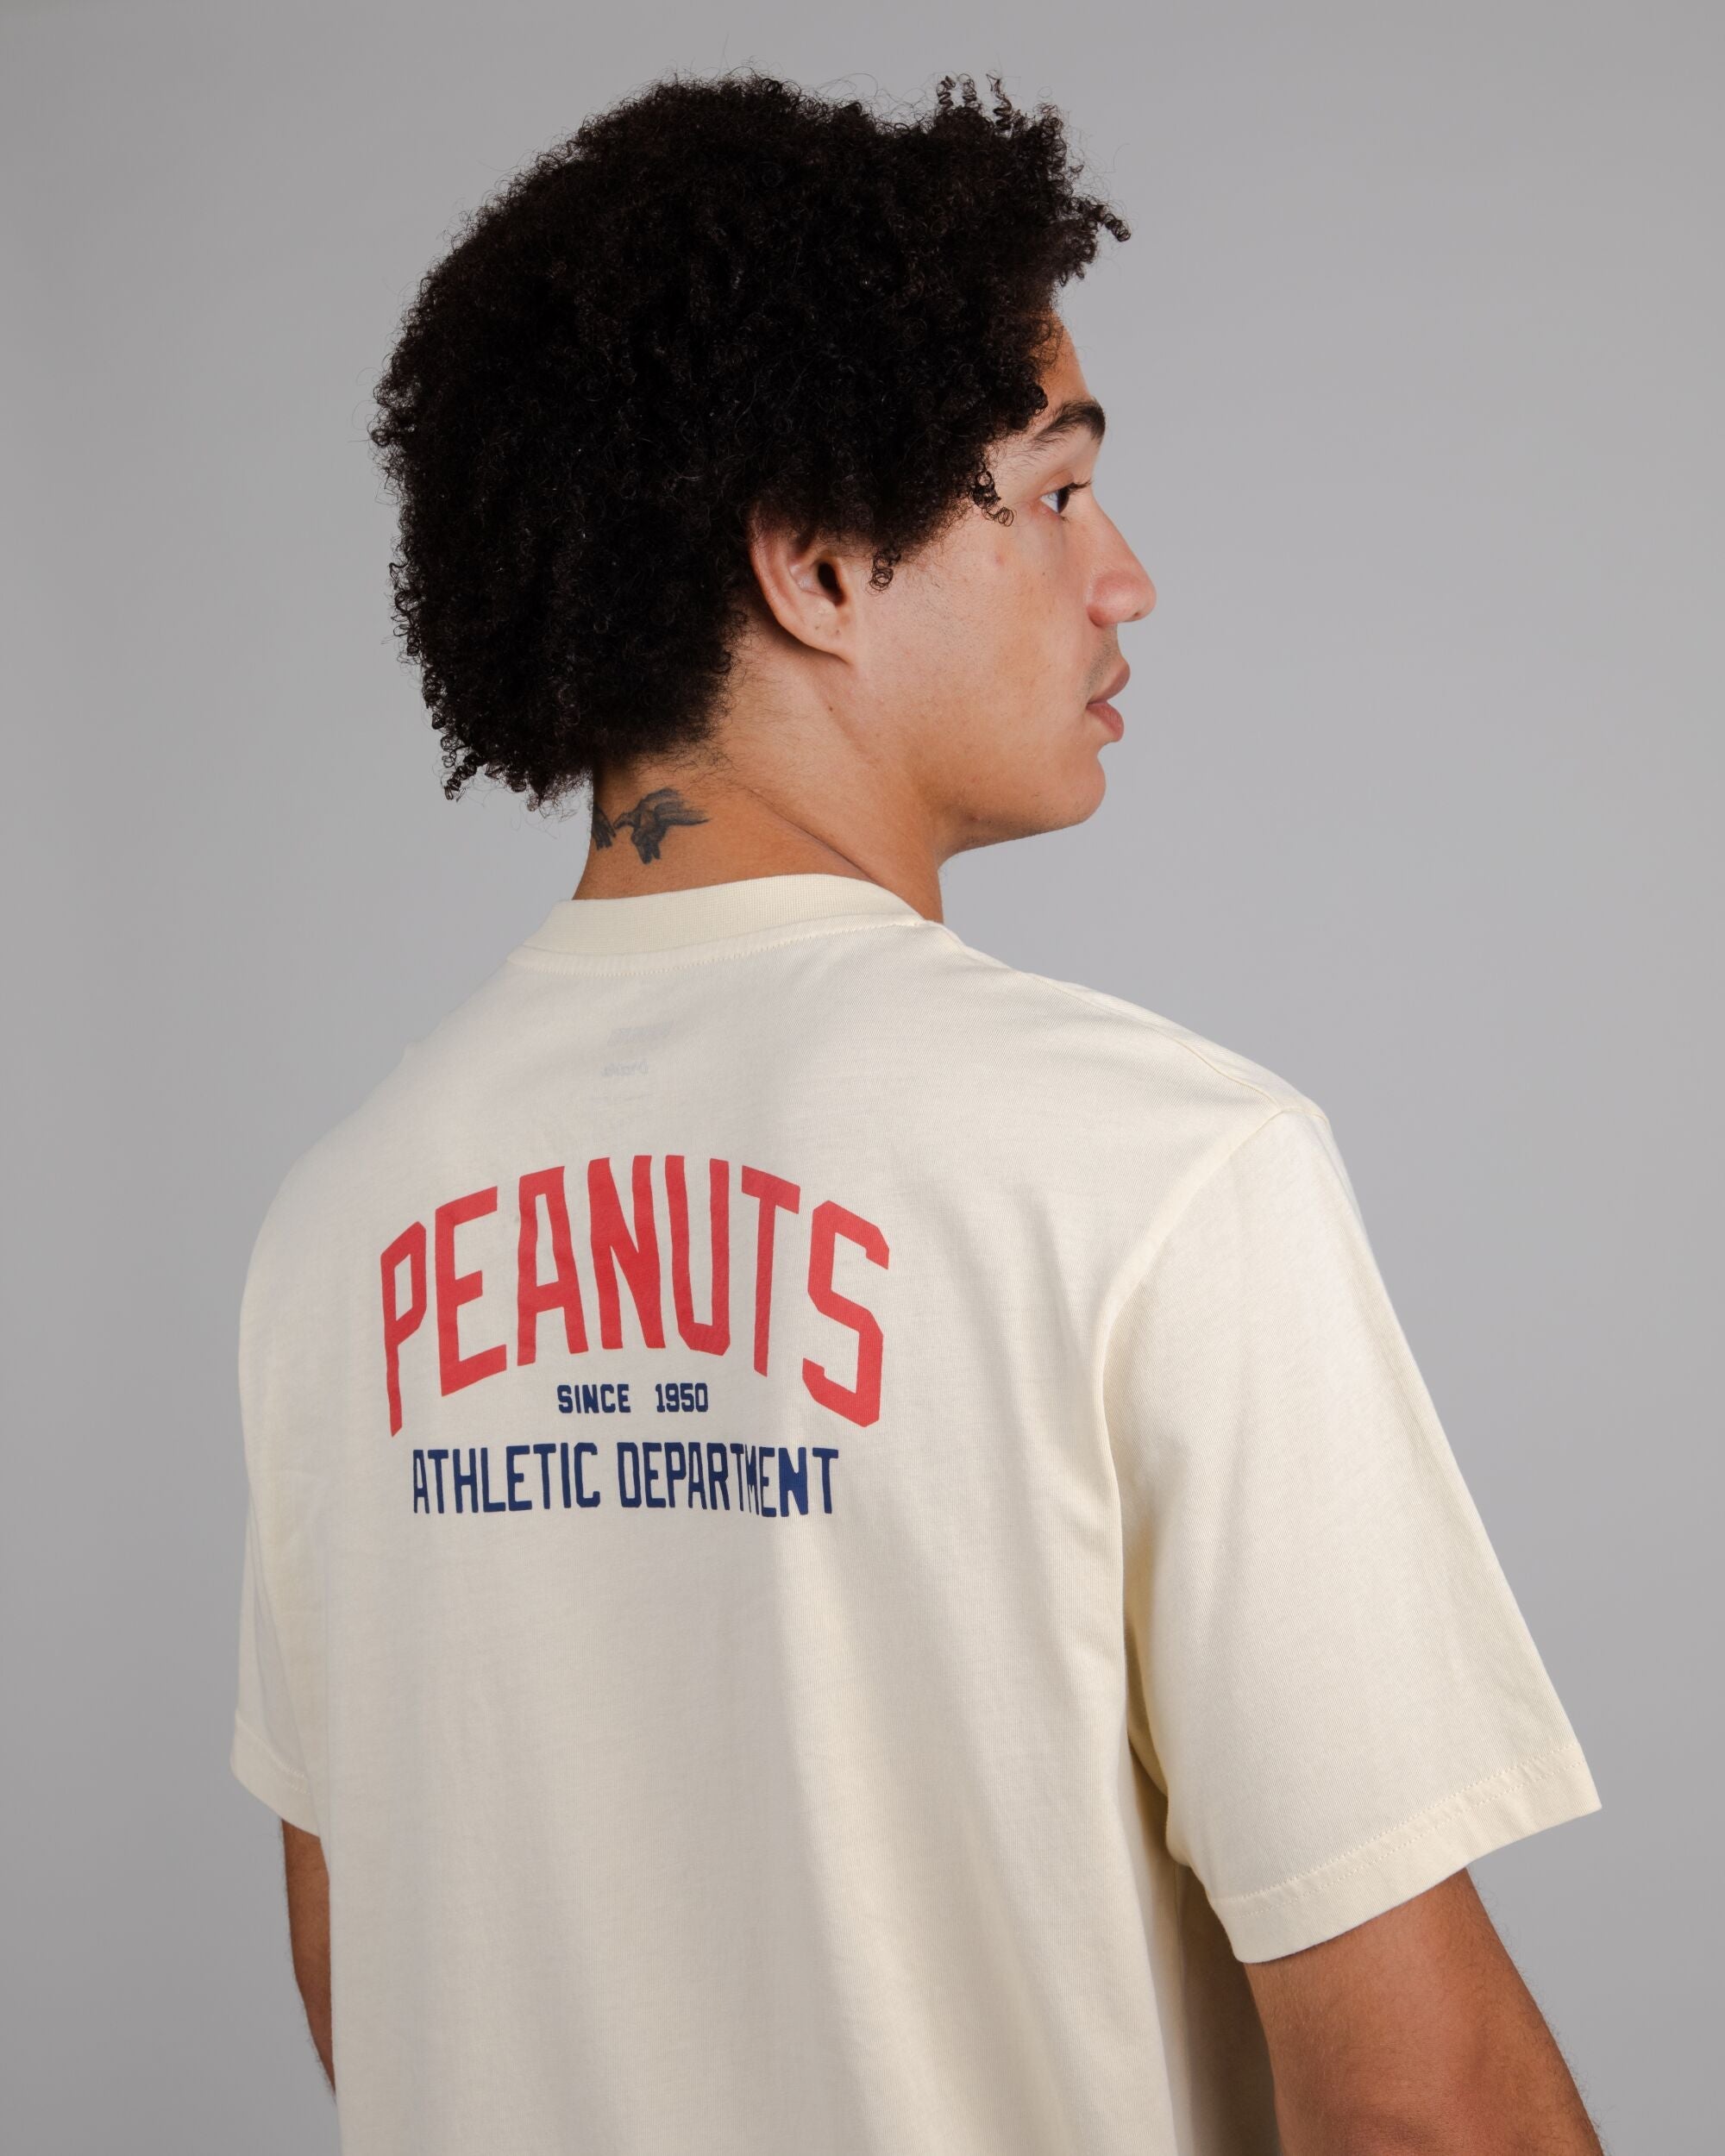 T-Shirt Peanuts Athletics in Sand aus Bio Baumwolle von Brava Fabrics